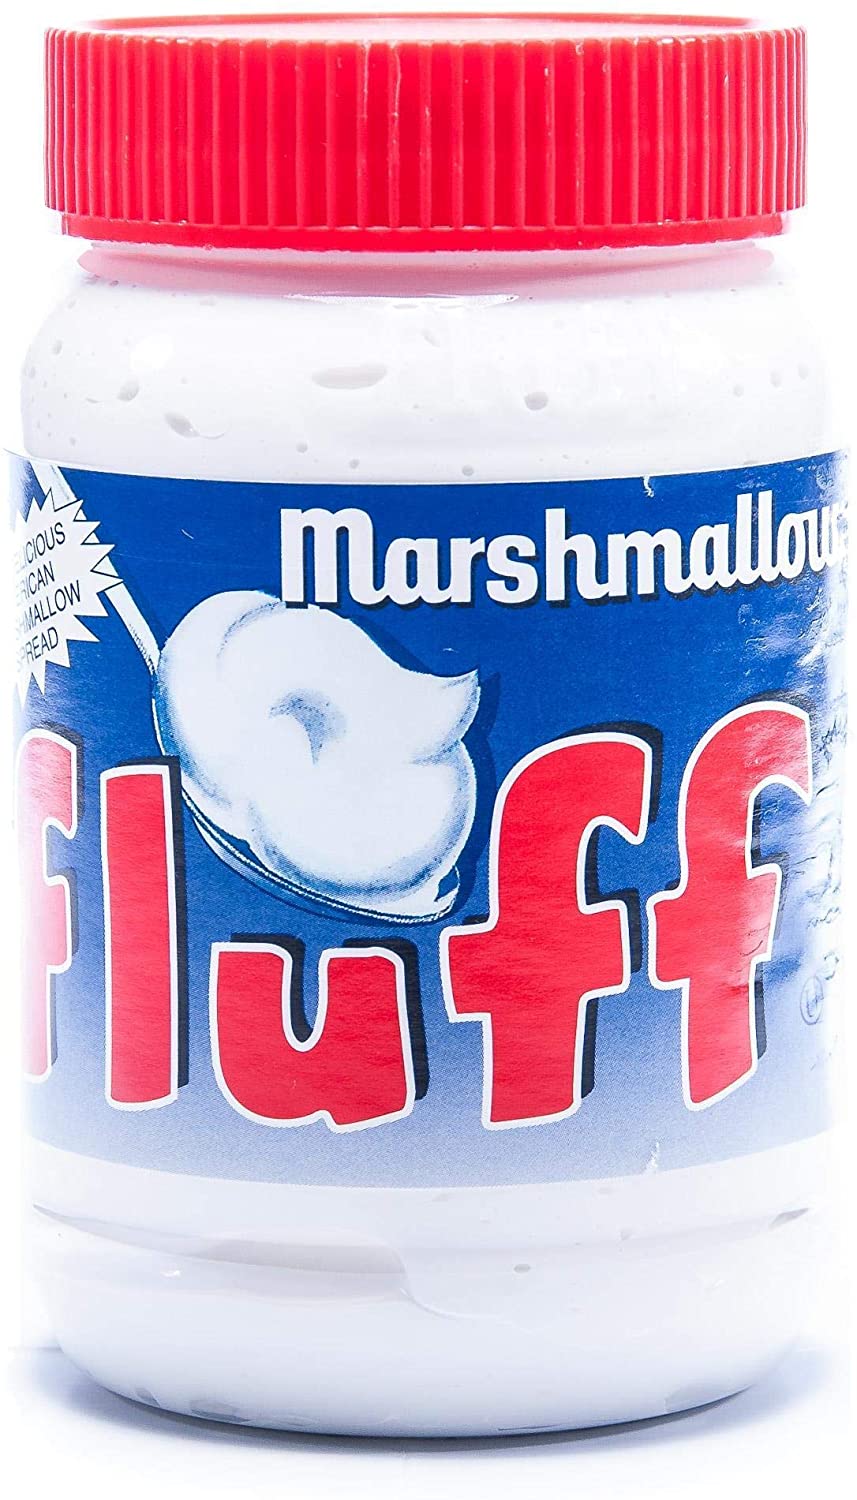 Rif_549 Marshmallow Fluff Durkee Usare Per Dolci E Torte 1X213G